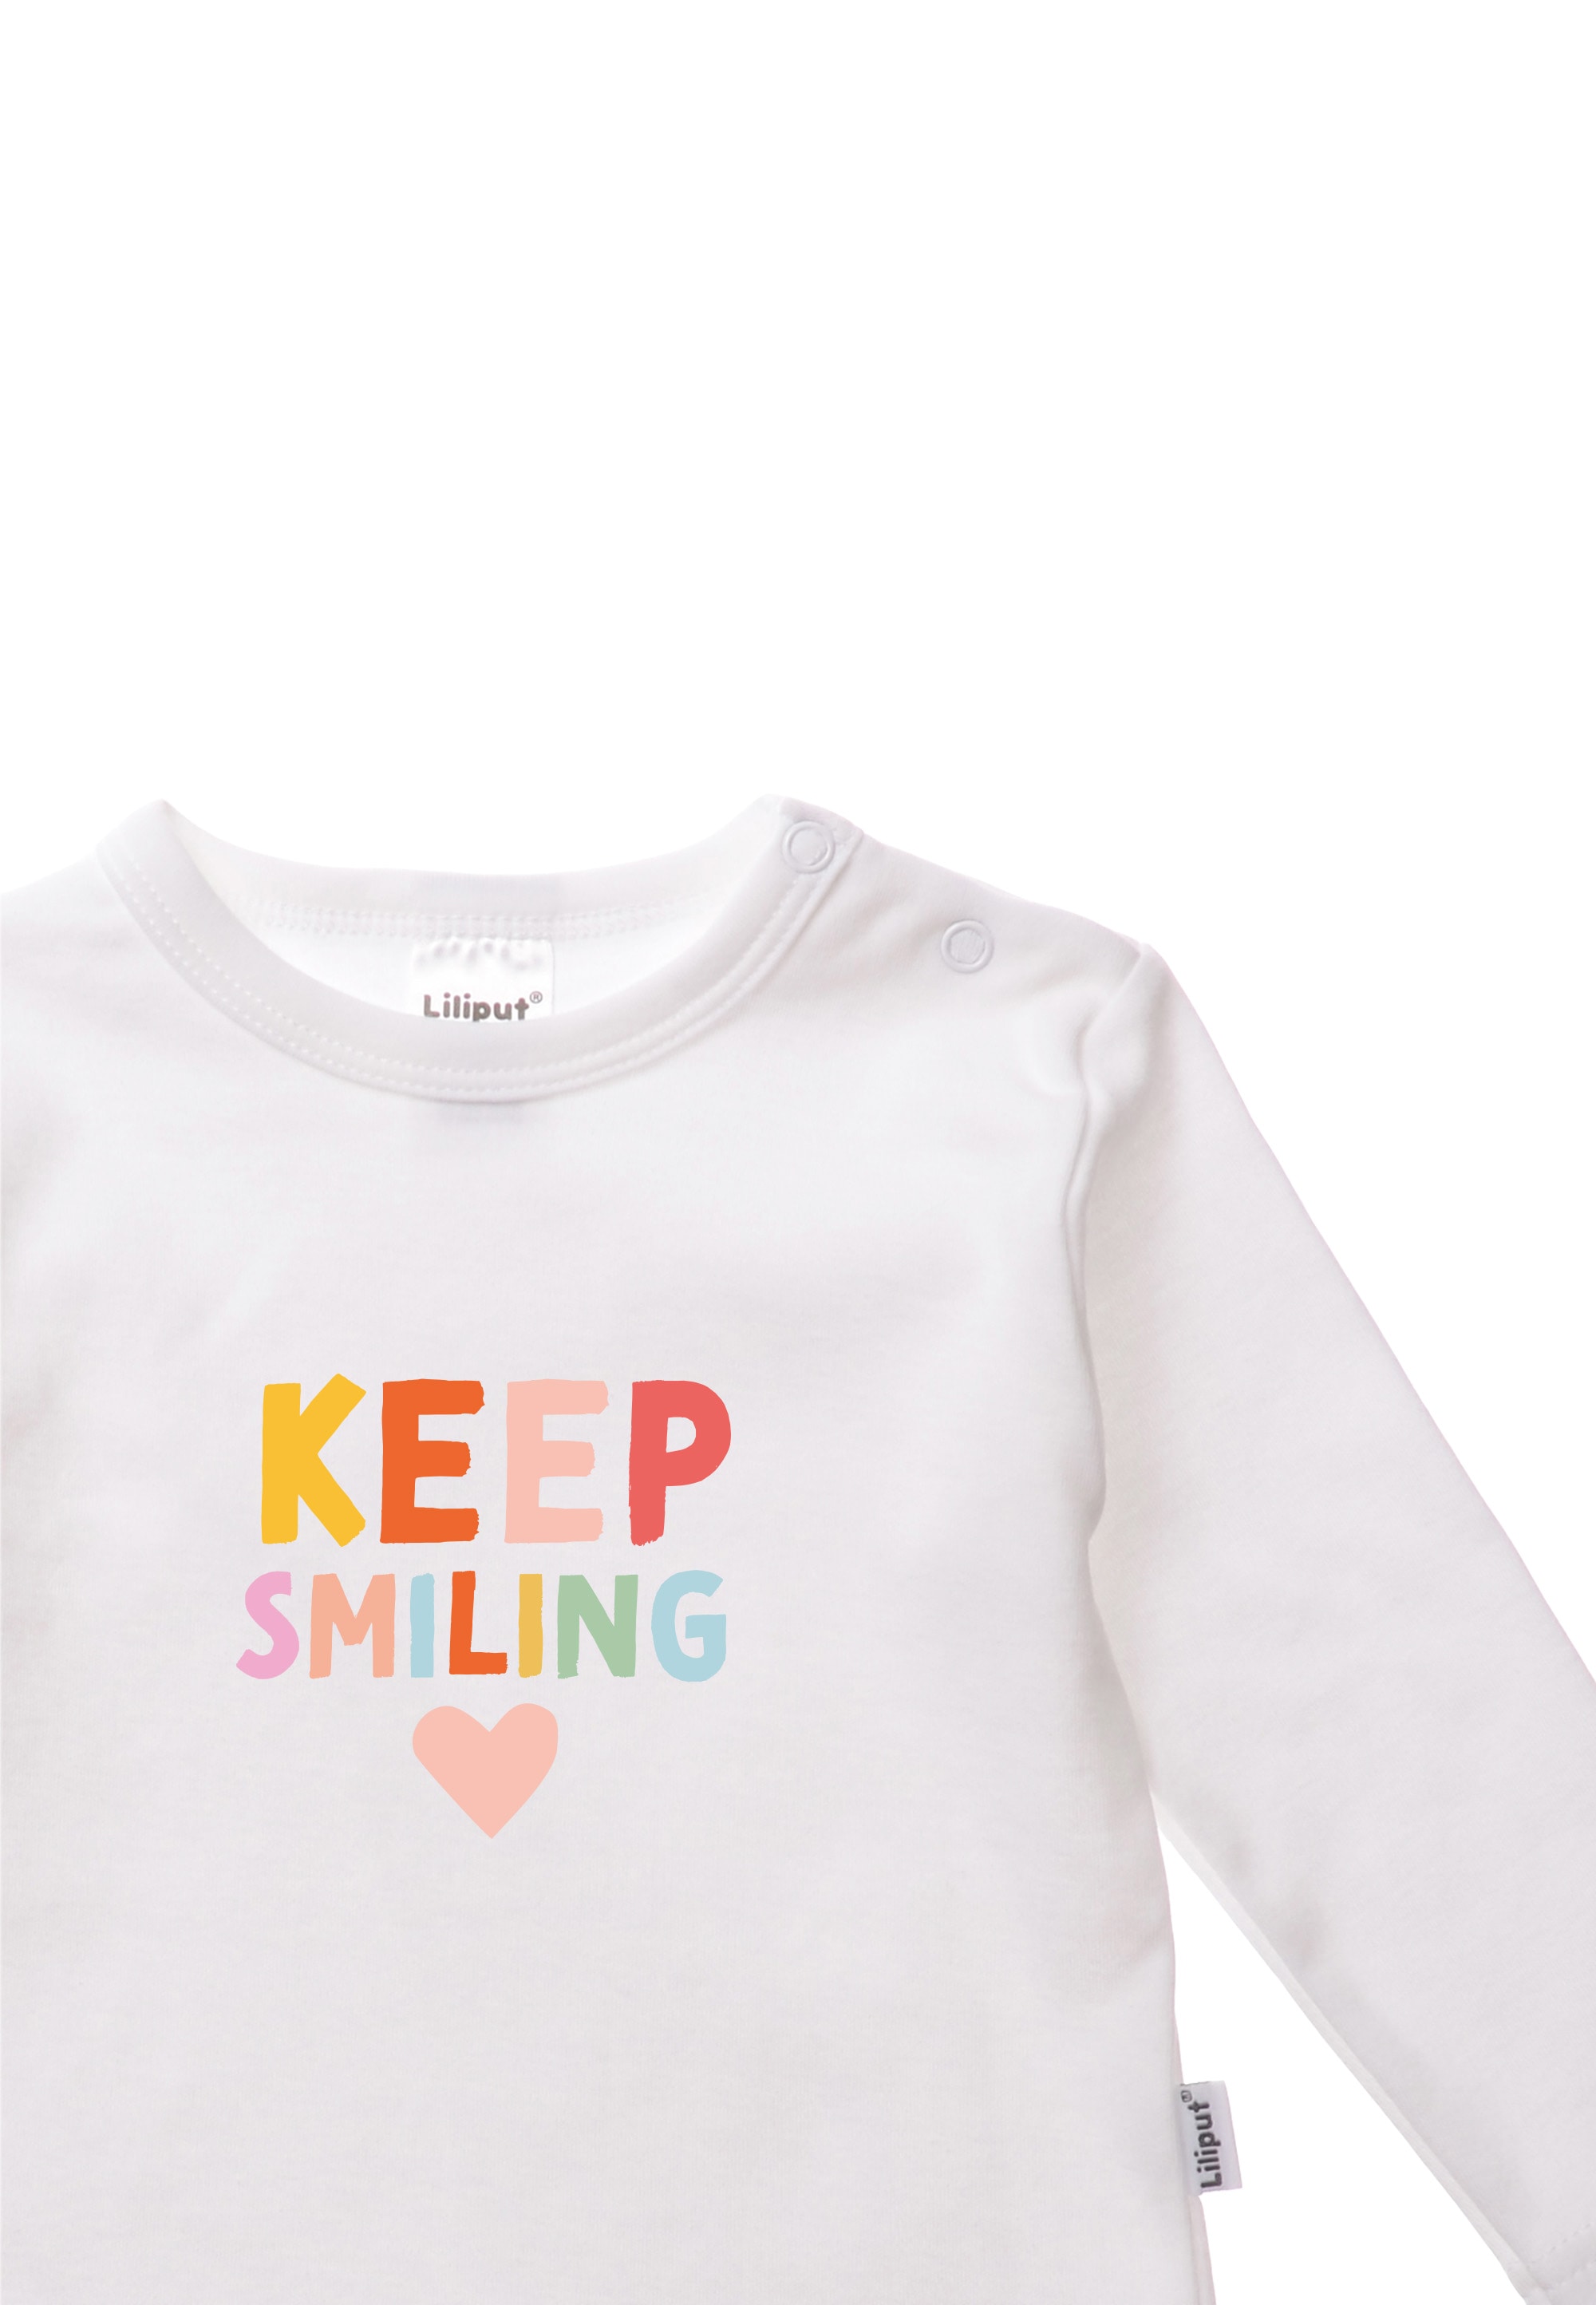 Liliput T-Shirt Smiling«, BAUR mit Rundhalsausschnitt | kaufen »Keep